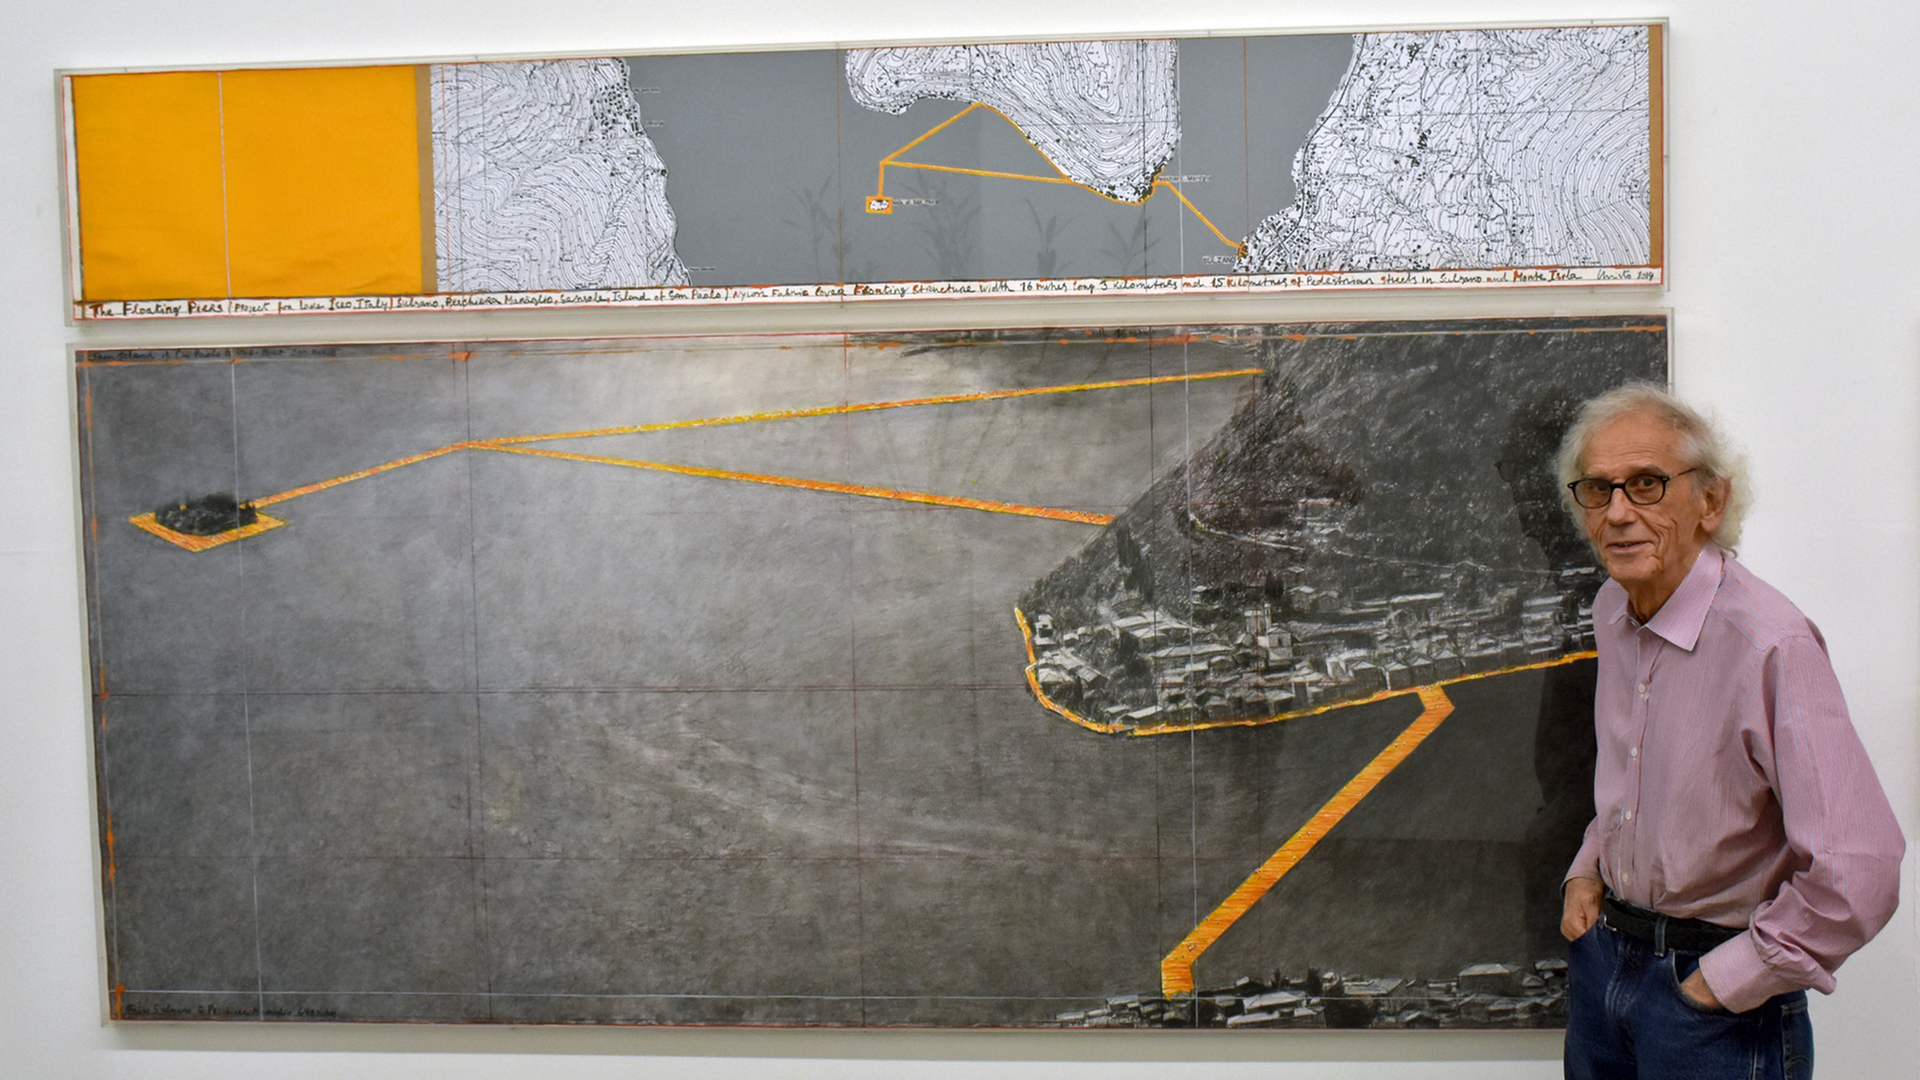 Christo in seinem Atelier in New York: Er steht vor einem Bild, das sein Projekt "Floating Piers" zeigt. Der Künstler möchte einen Steg aus knallgelben Kanistern bauen, der über den italienischen Iseo-See führt.